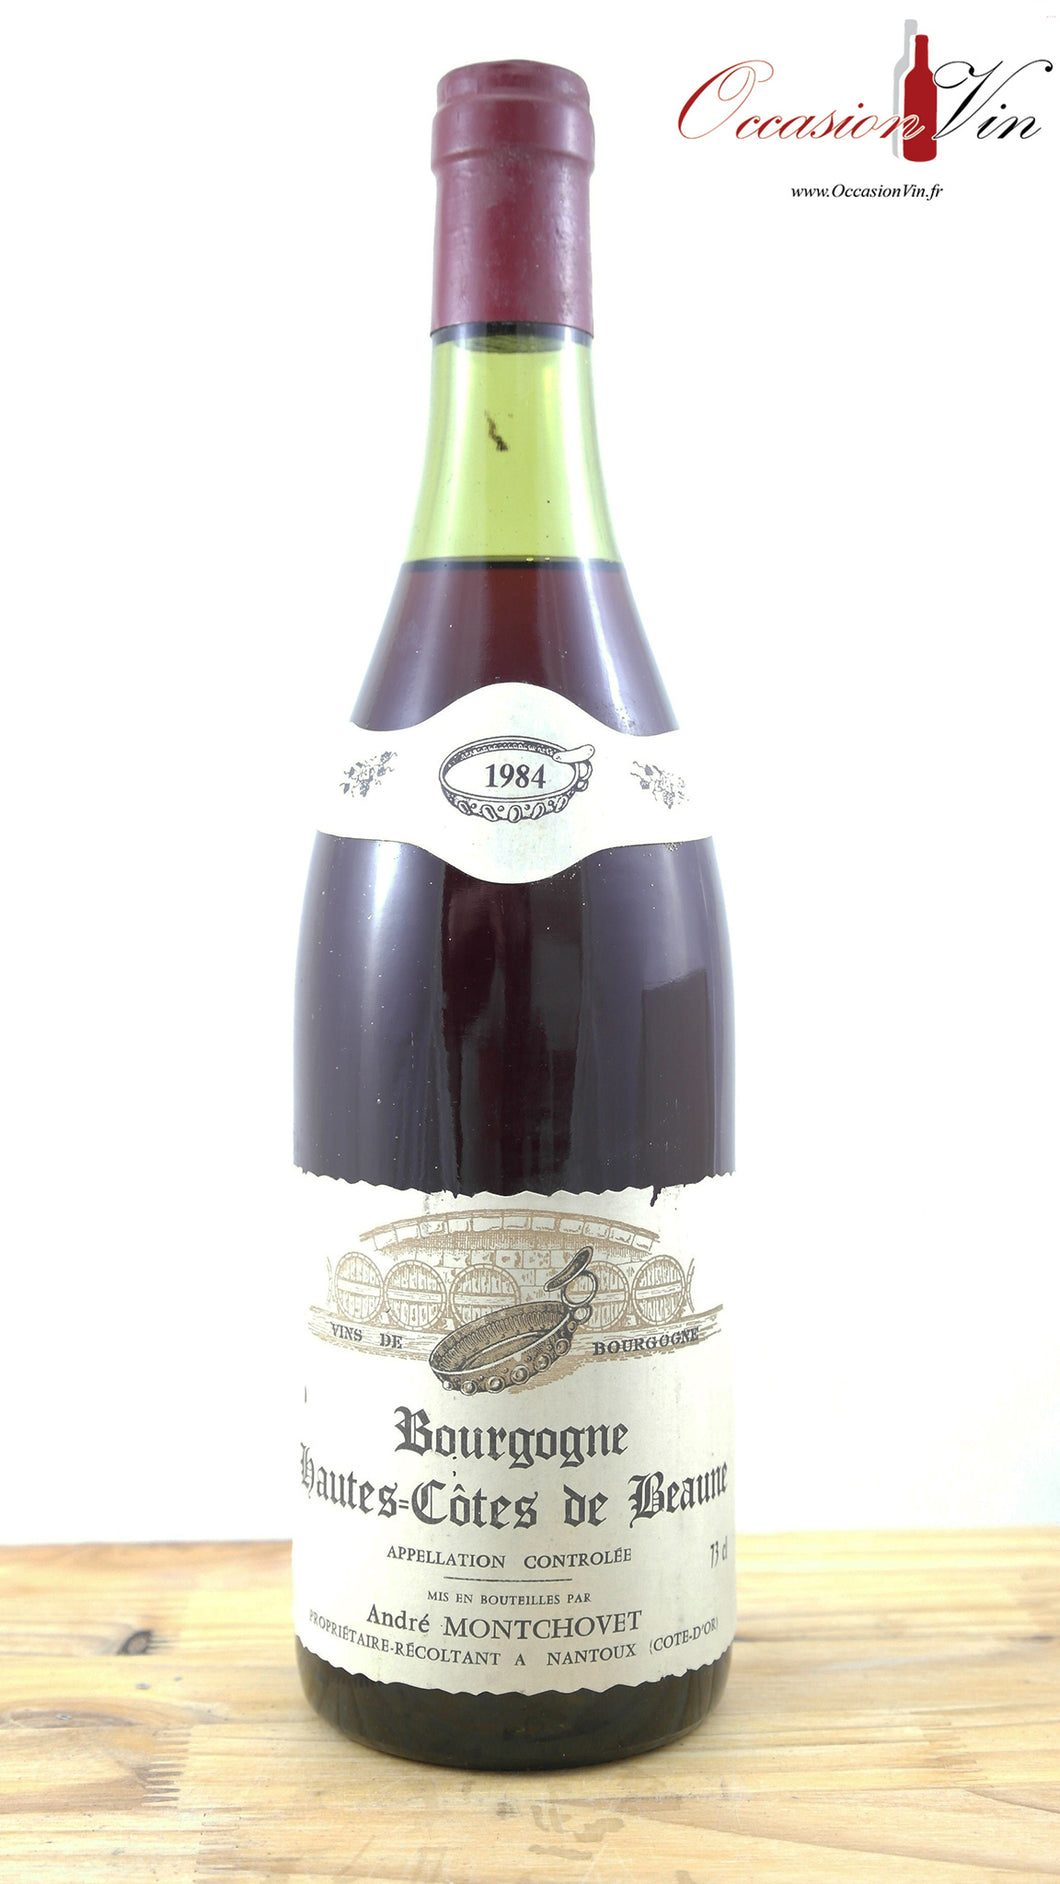 Hautes-Côtes de Beaune André Montchovet Vin 1984